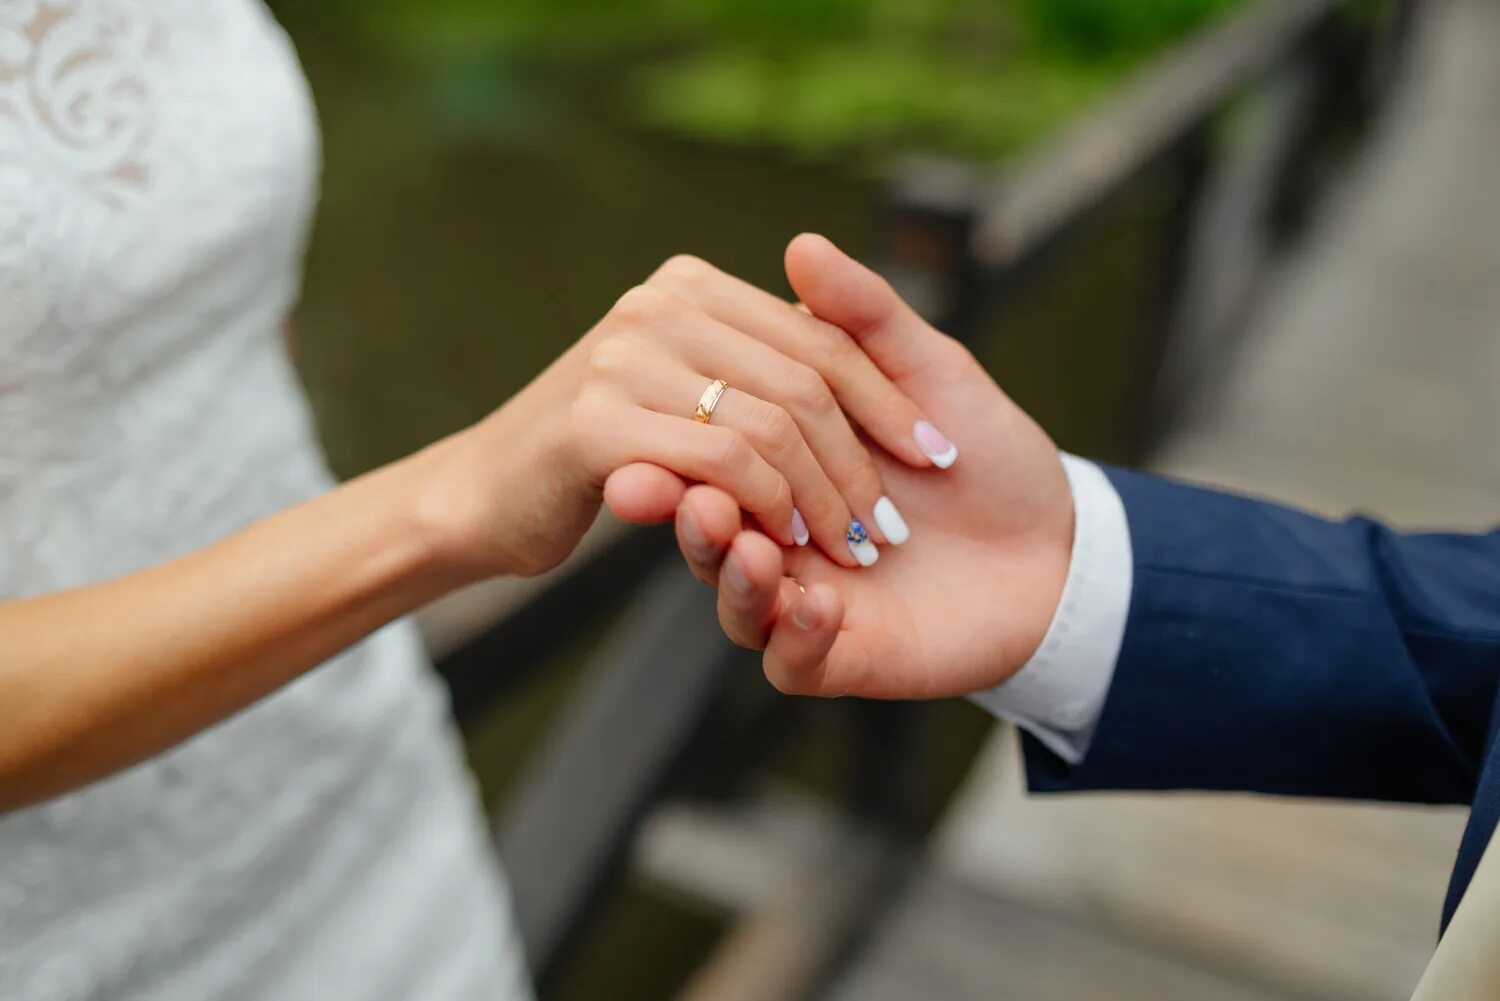 Вопрос замужества. Брак. Свадьба мобилизованного. Институт брака картинки. Жених и невеста держат руки восьмеркой.